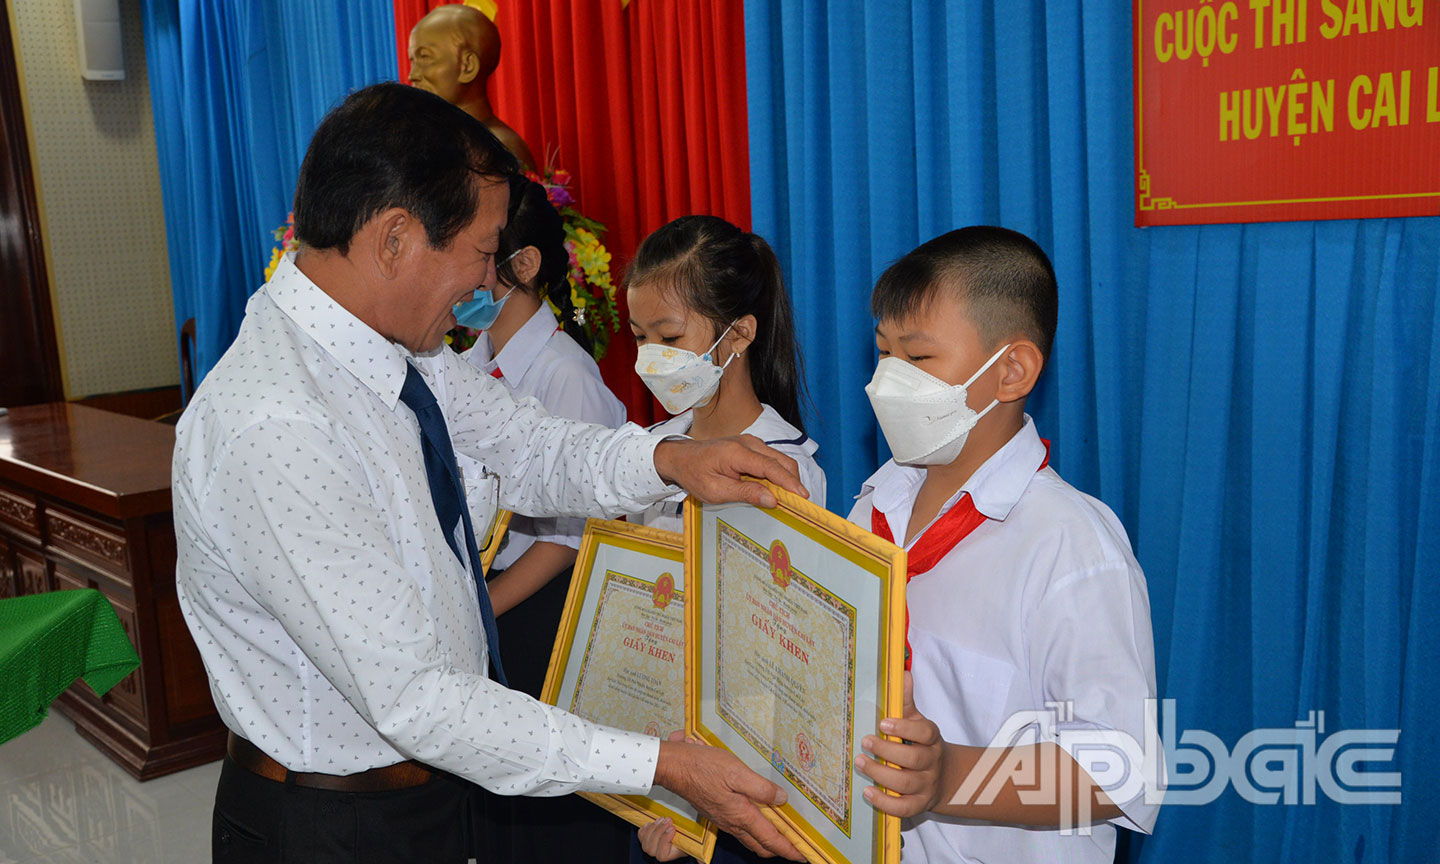  Đồng chí Võ Văn Nhanh trao giải các em học sinh có sản phẩm đạt giải cao.